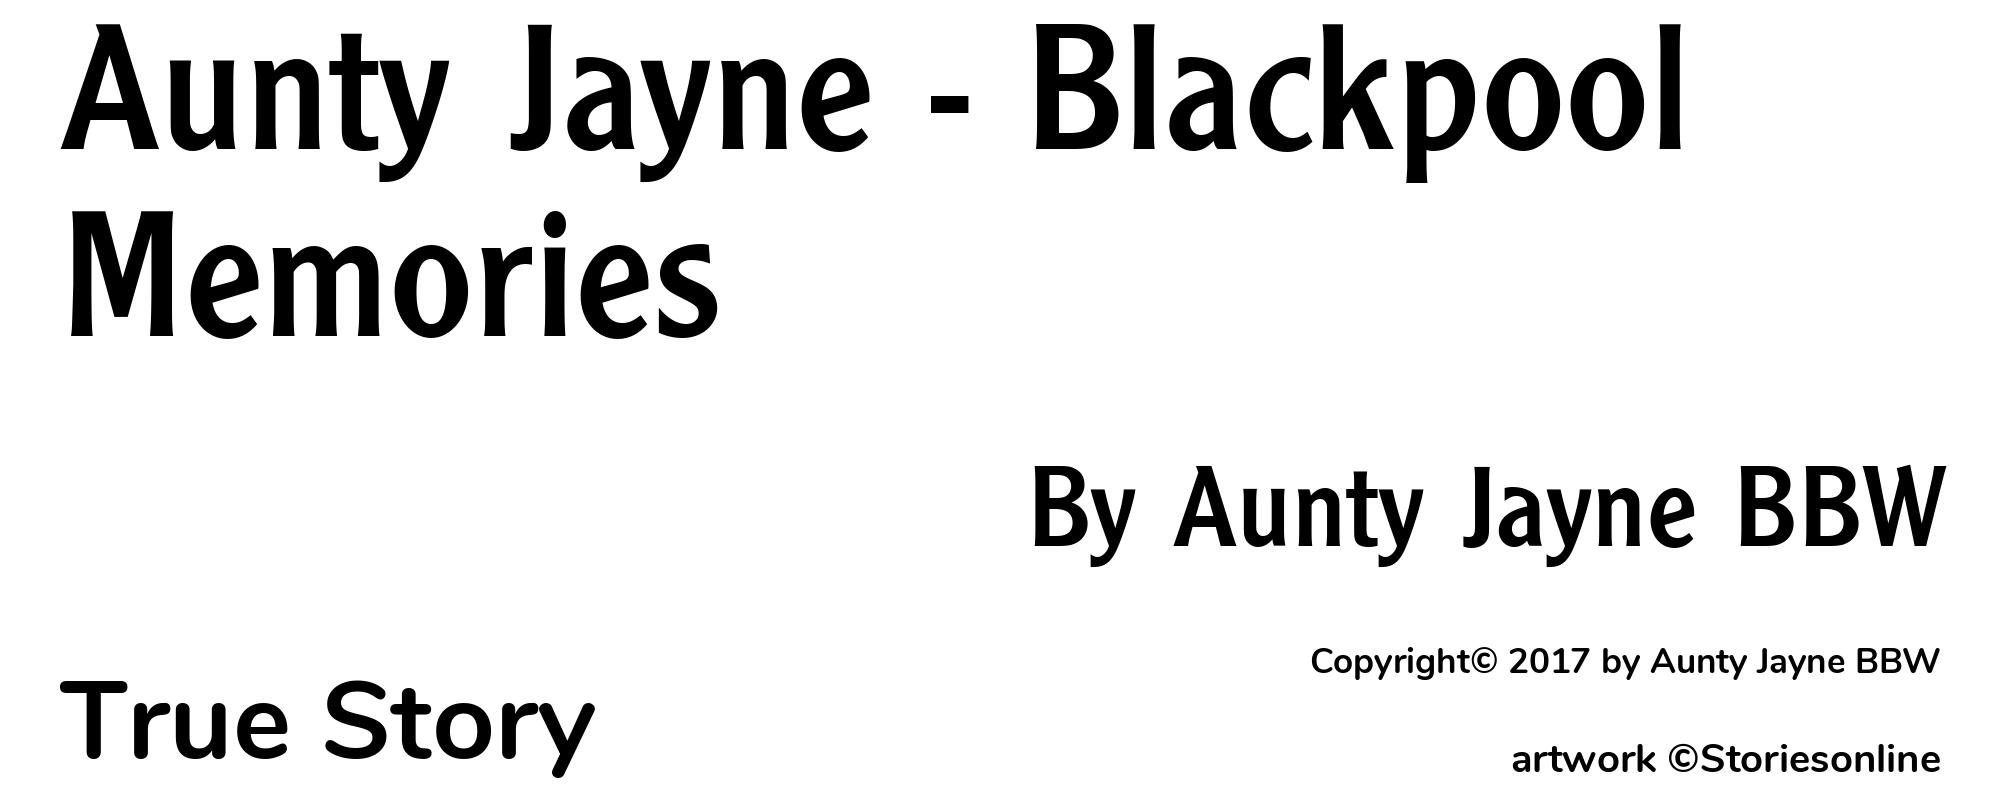 Aunty Jayne - Blackpool Memories - Cover